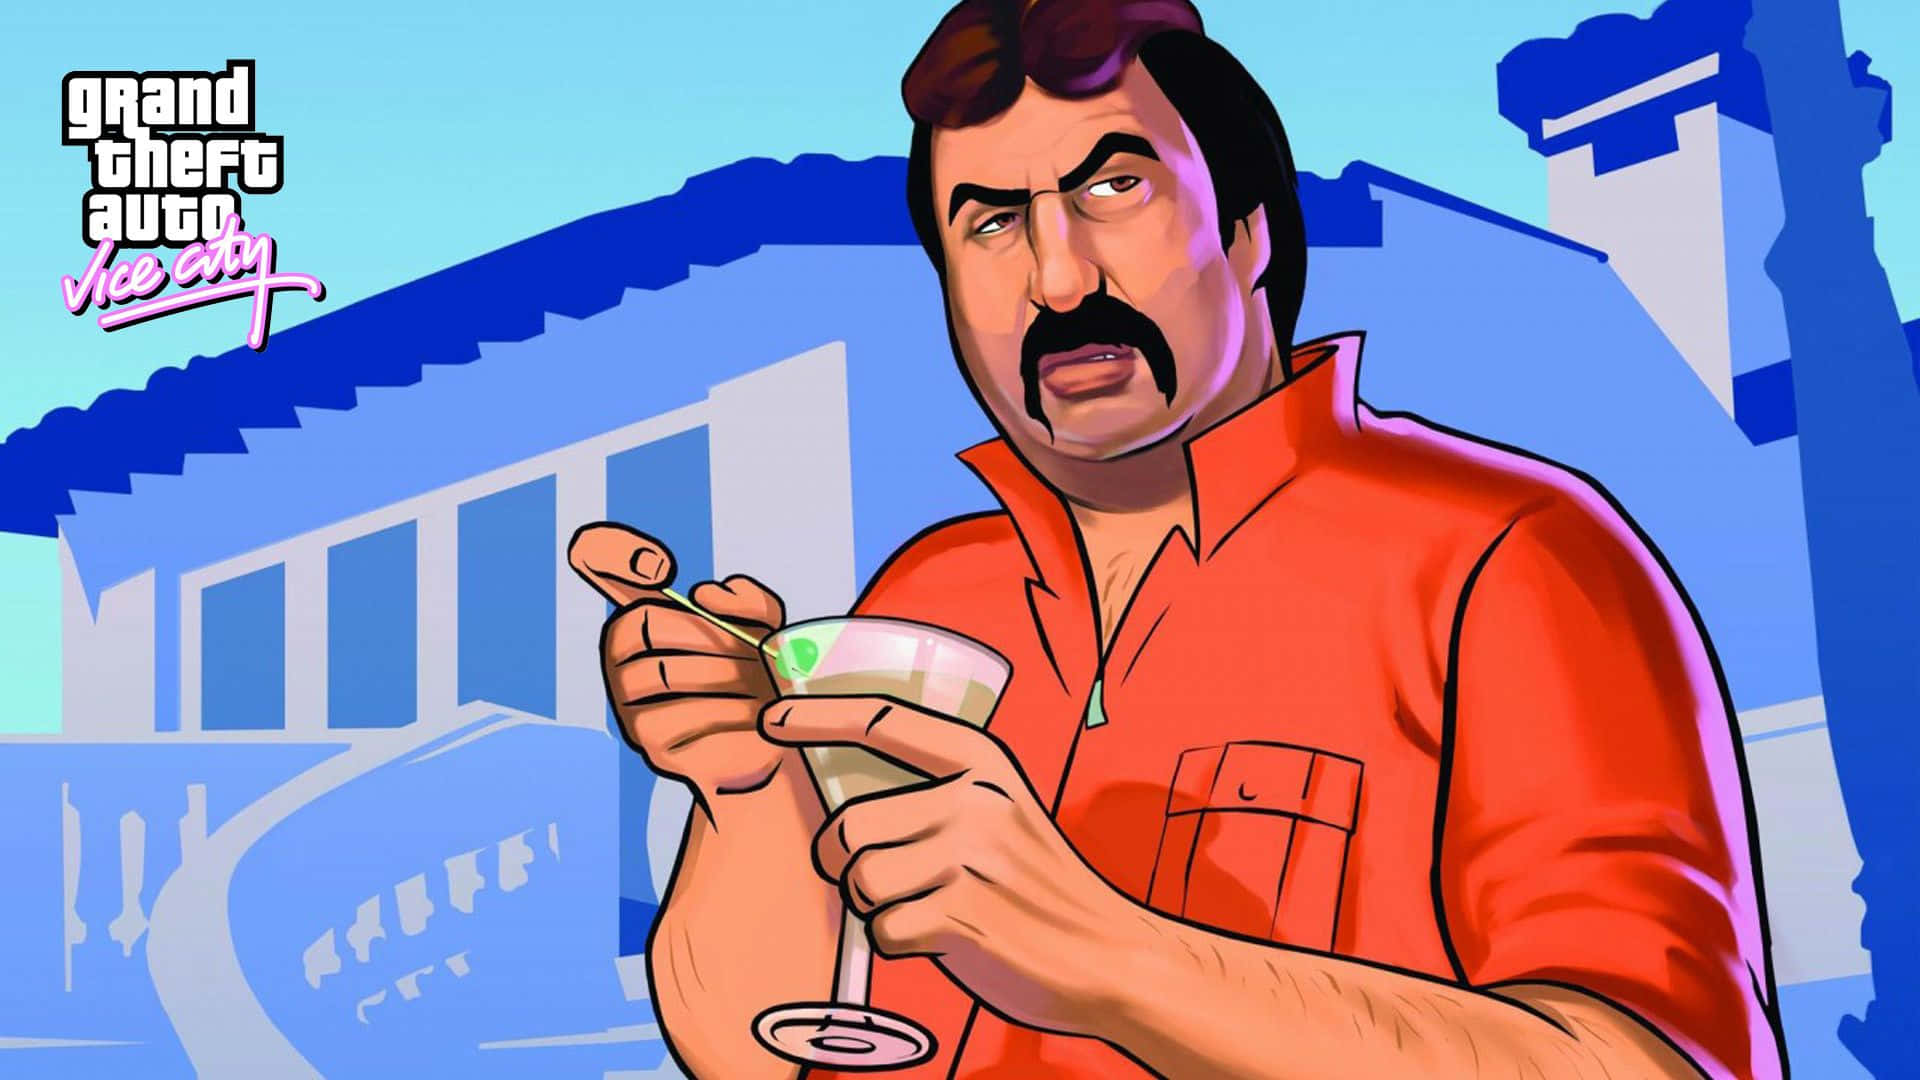 Dieerkundung Von Vice City In Grand Theft Auto Wallpaper